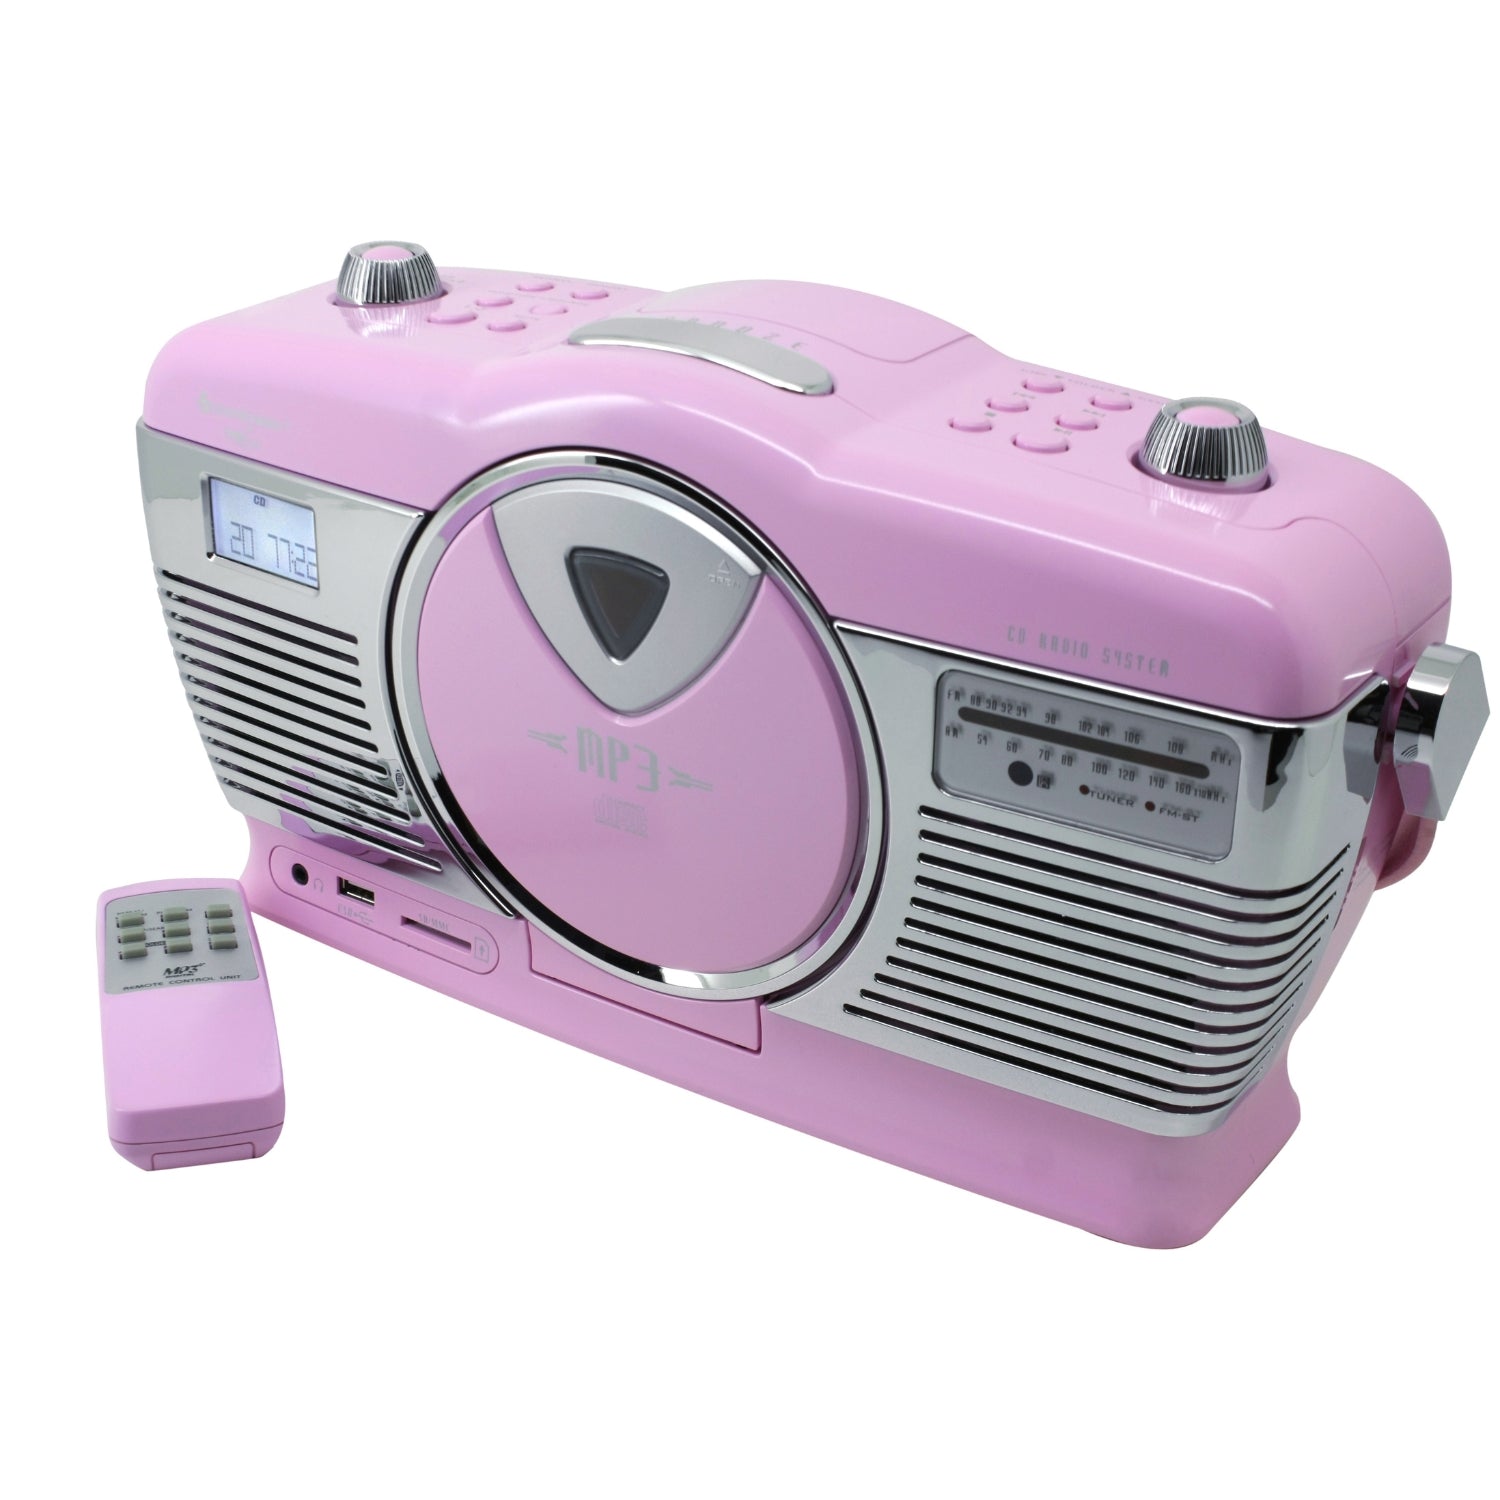 Soundmaster HighLine RCD1350PI Radio rétro avec CD USB MP3 SD horloge avec réveil télécommande